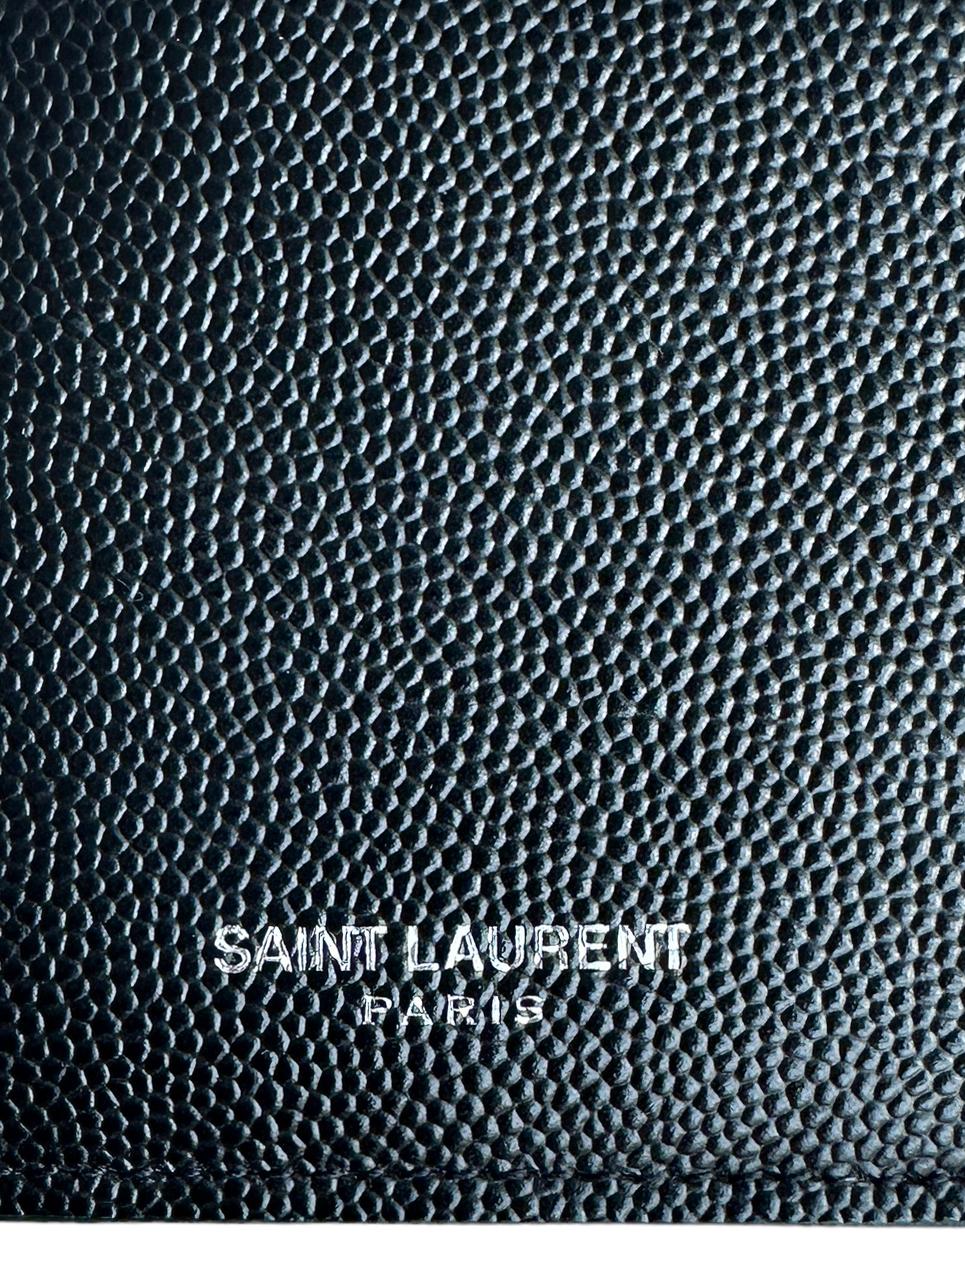 Saint Laurent Black Fragments Zipped Card Case For Sale 3